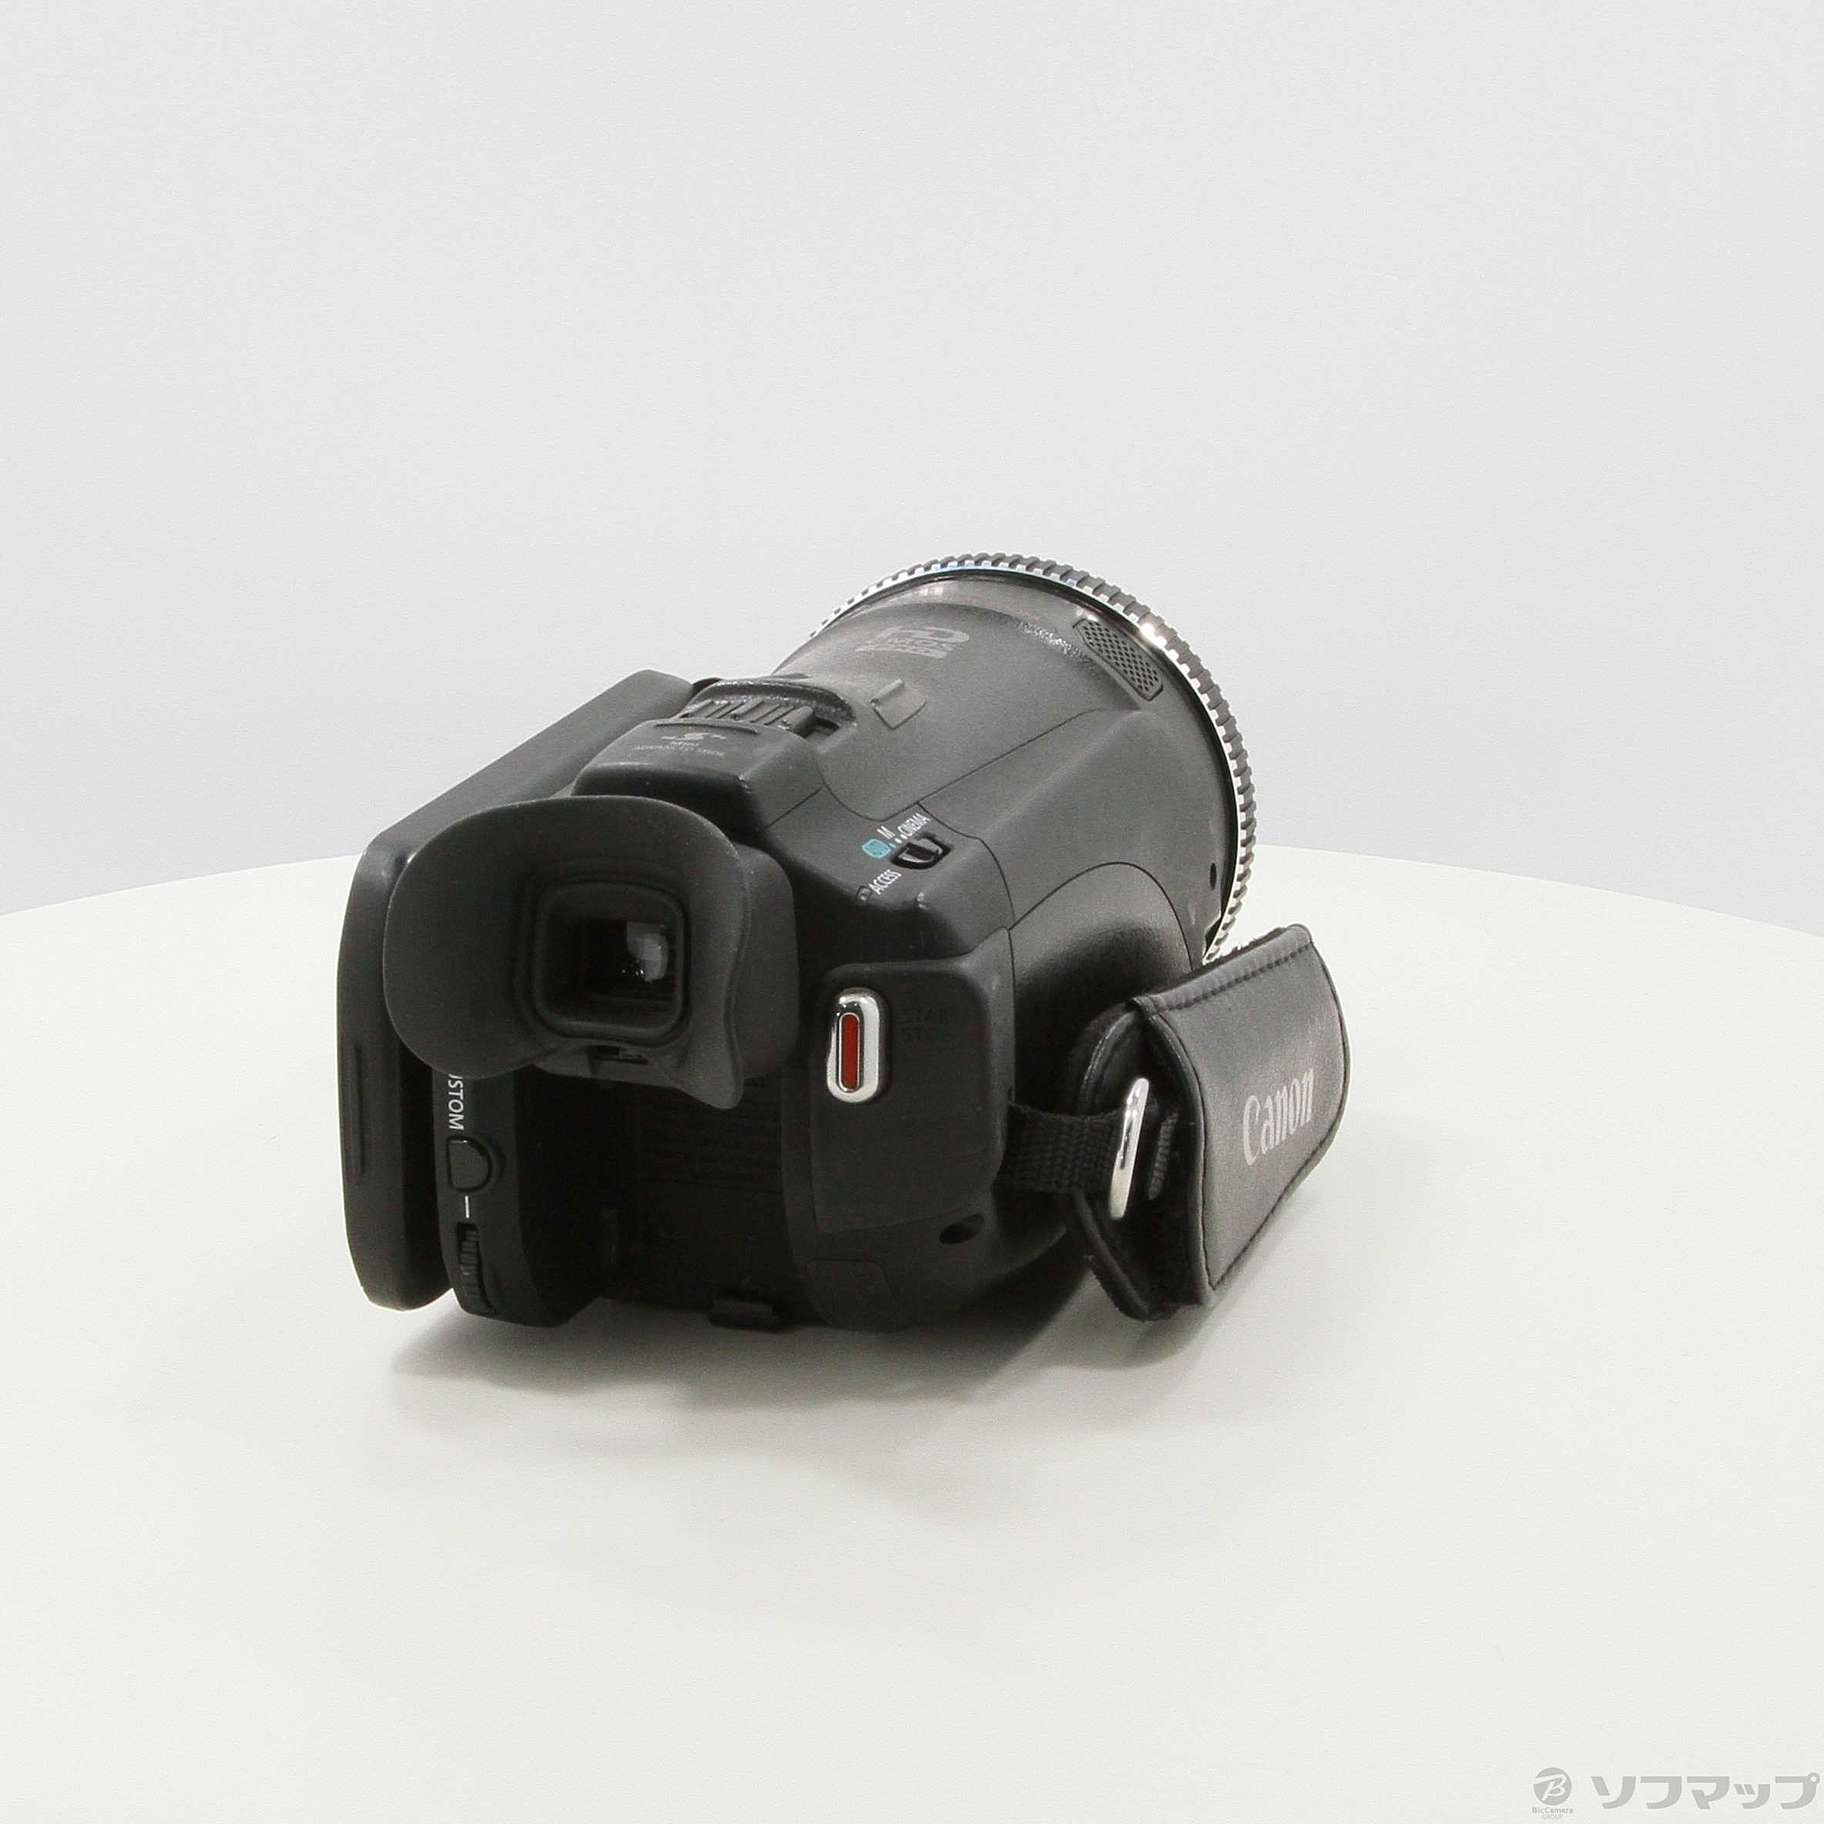 高品位ビデオカメラCanon HF G20 （変更出品） - ビデオカメラ